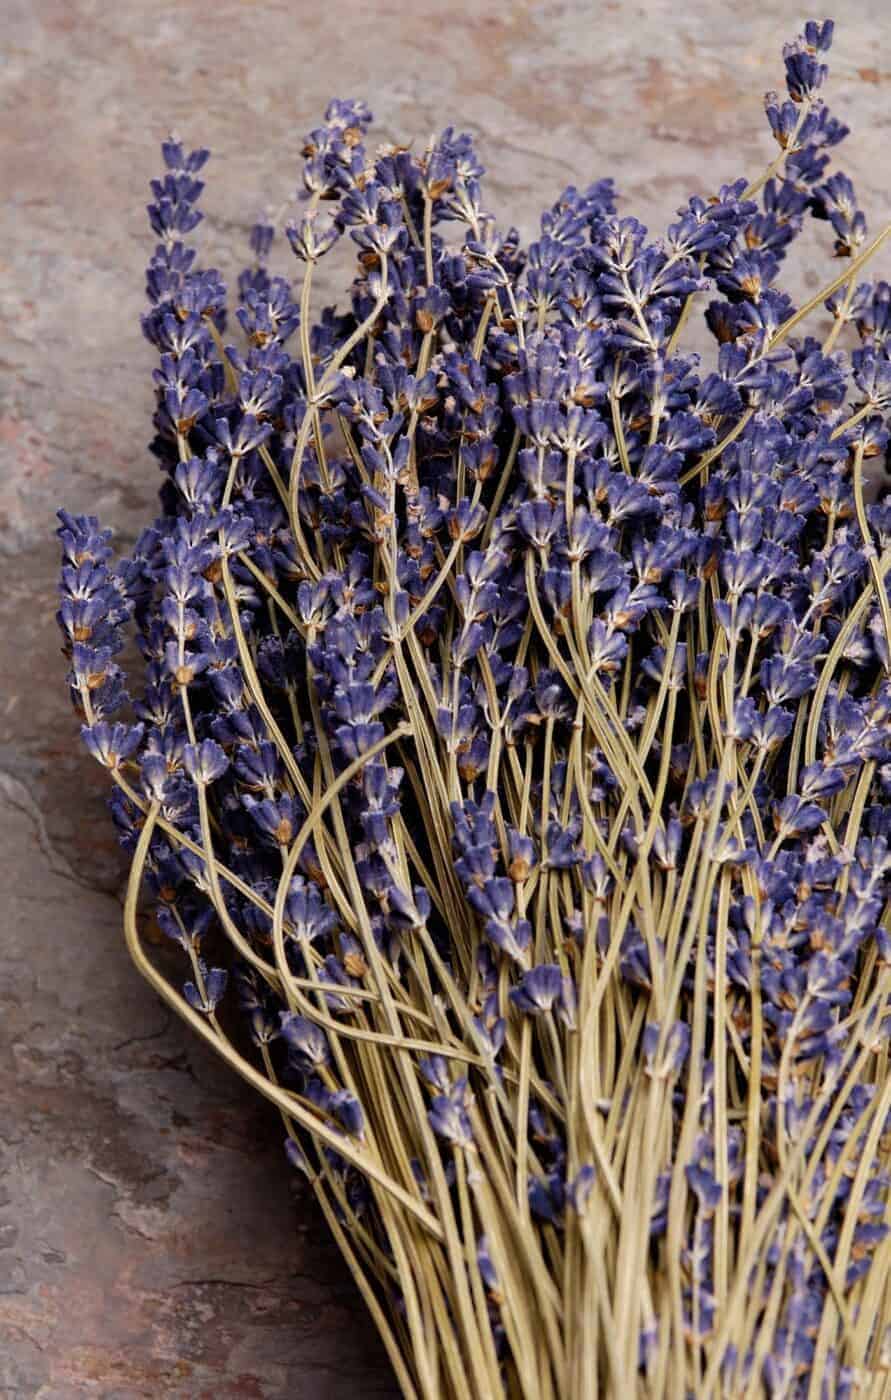 English lavender - dried